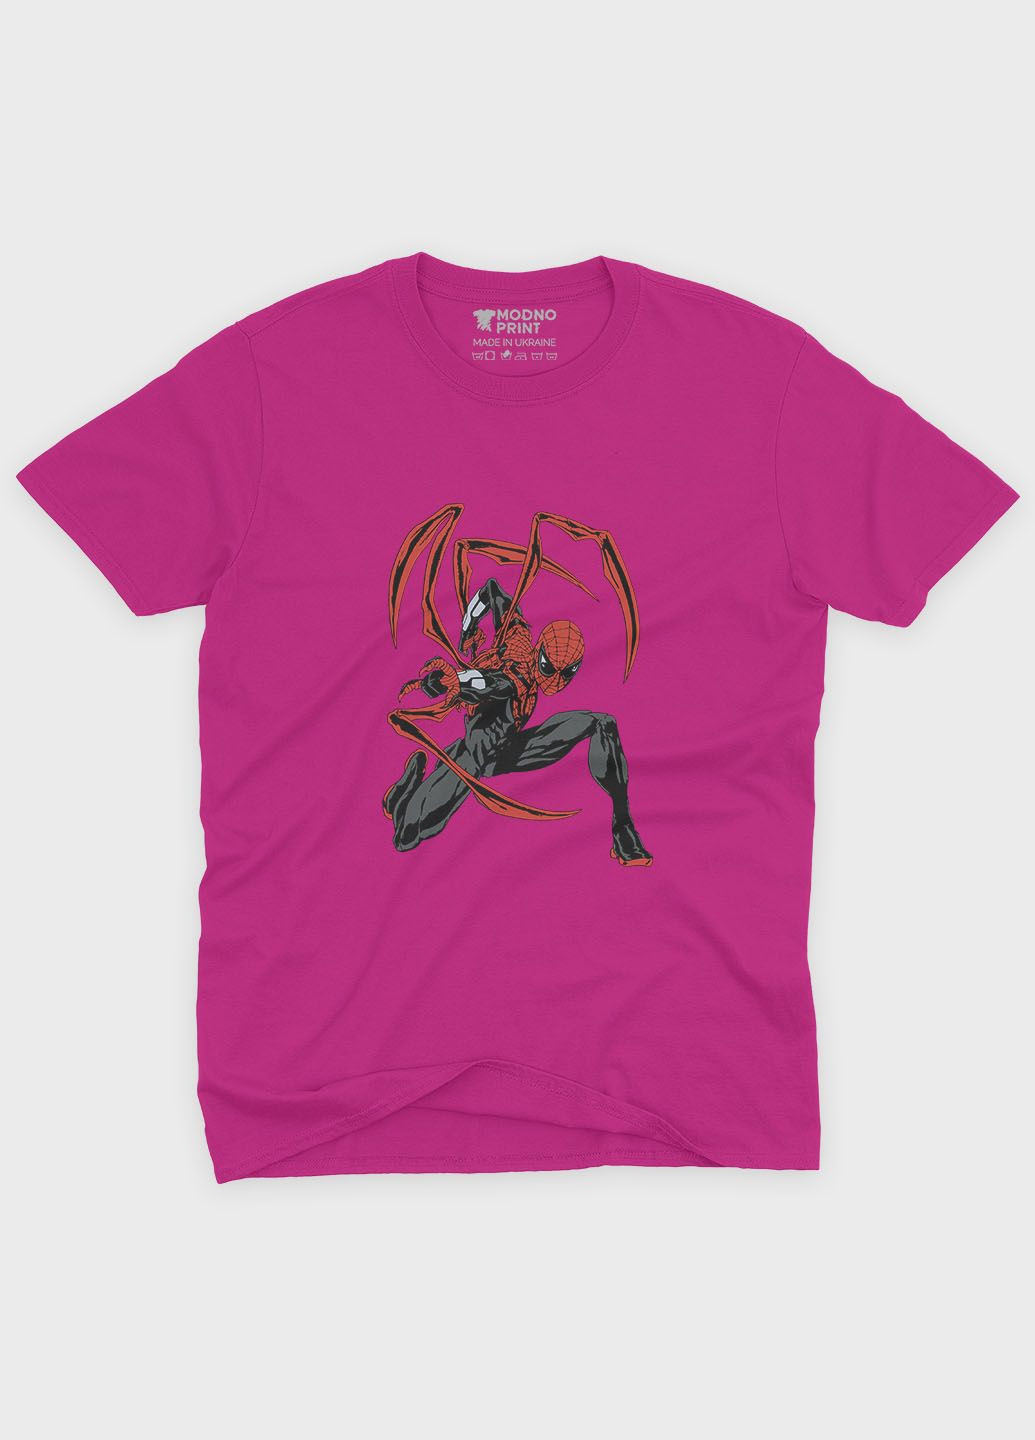 Рожева демісезонна футболка для хлопчика з принтом супергероя - людина-павук (ts001-1-fuxj-006-014-115-b) Modno